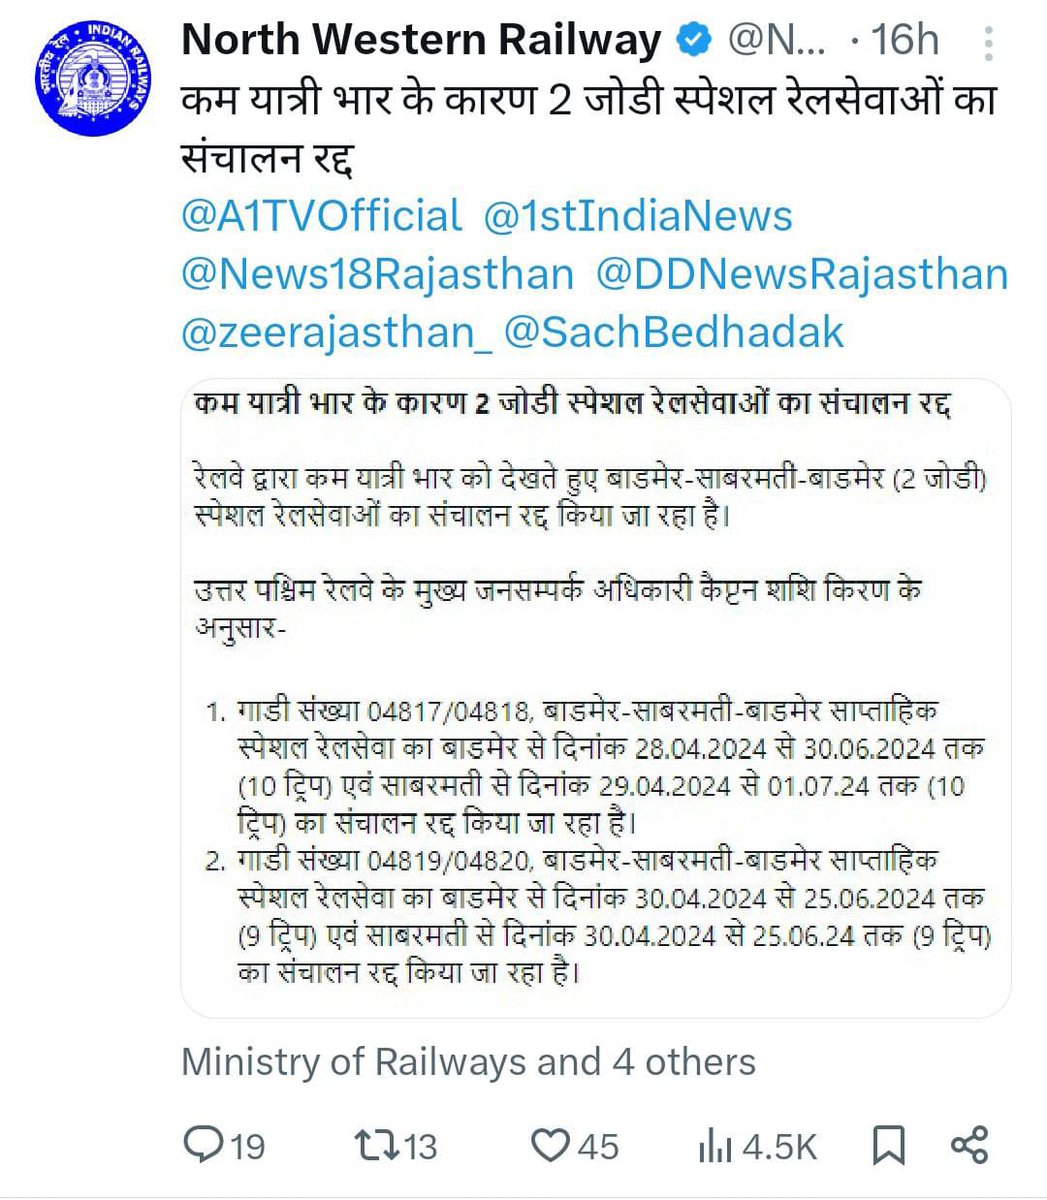 चुनाव खत्म होते ही जिस प्रकार से बाड़मेर जैसलमेर बालोतरा लोकसभा क्षेत्र की जनता की रेल सेवा बन्द की गई वह निन्दनीय है। केन्द्र सरकार का दोहरा चरित्र जनता समझ चुकी है। तत्काल प्रभाव से इस आदेश को रद्द किया जाए। @RailMinIndia @NWRailways